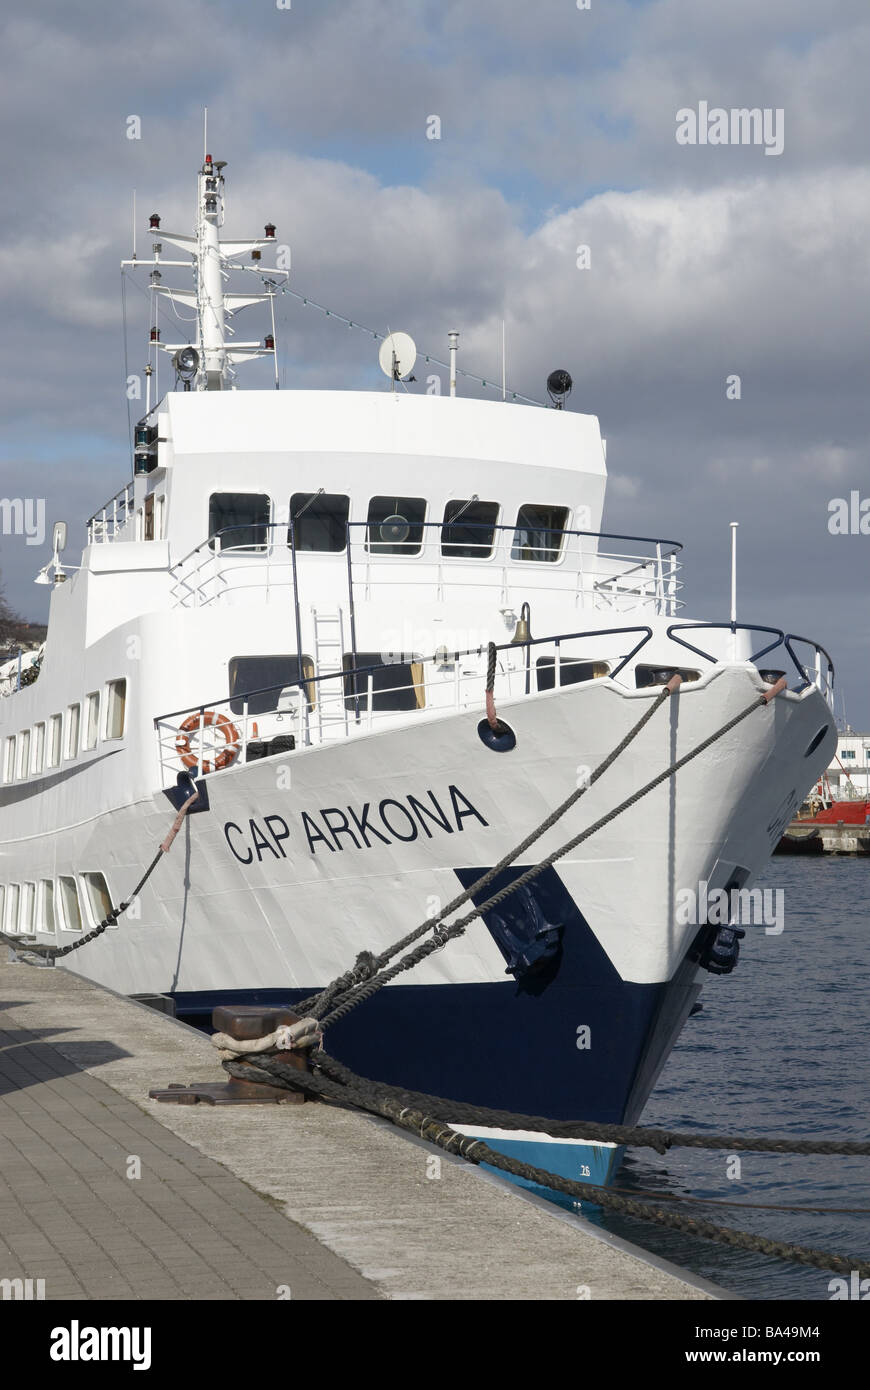 Cap Arkona trip-navire cabine avc-windows-life preserver harbour quay Poller attaché de rosée de l'eau ciel nuages sait Allemagne Banque D'Images